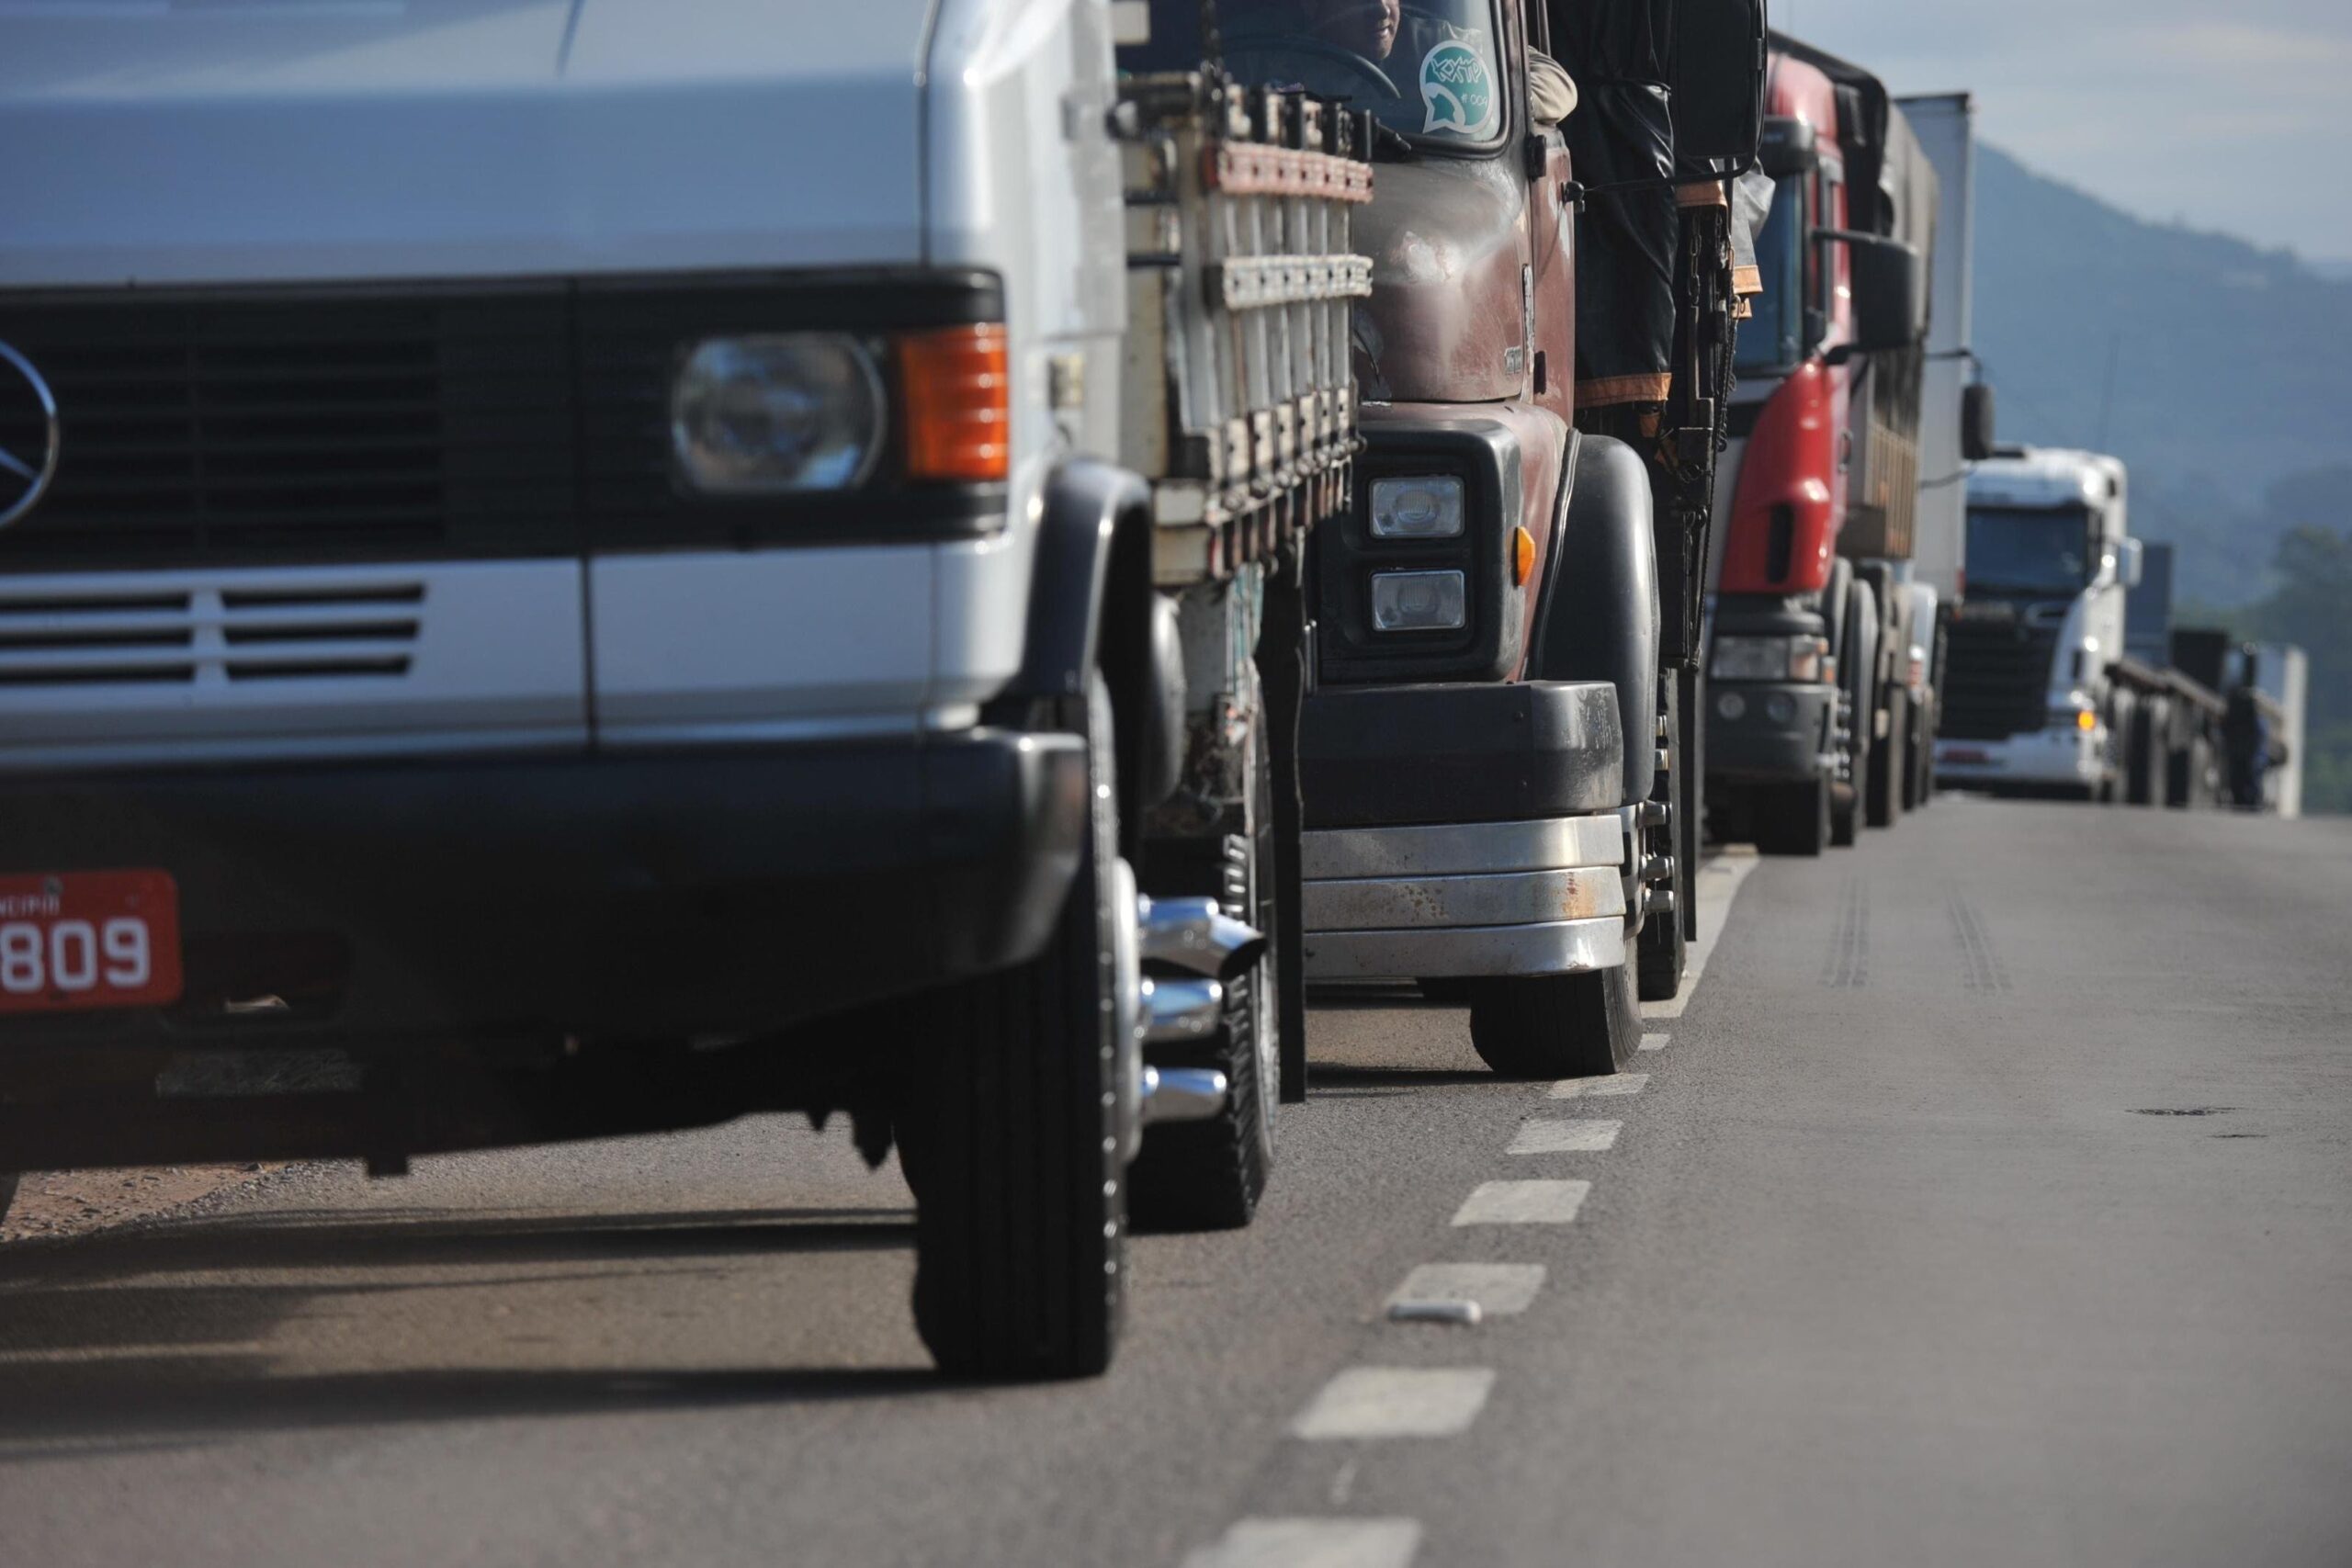 Governo Federal afirma futura negociação com Eco101 sobre a instalação de locais na rodovia para caminhoneiros